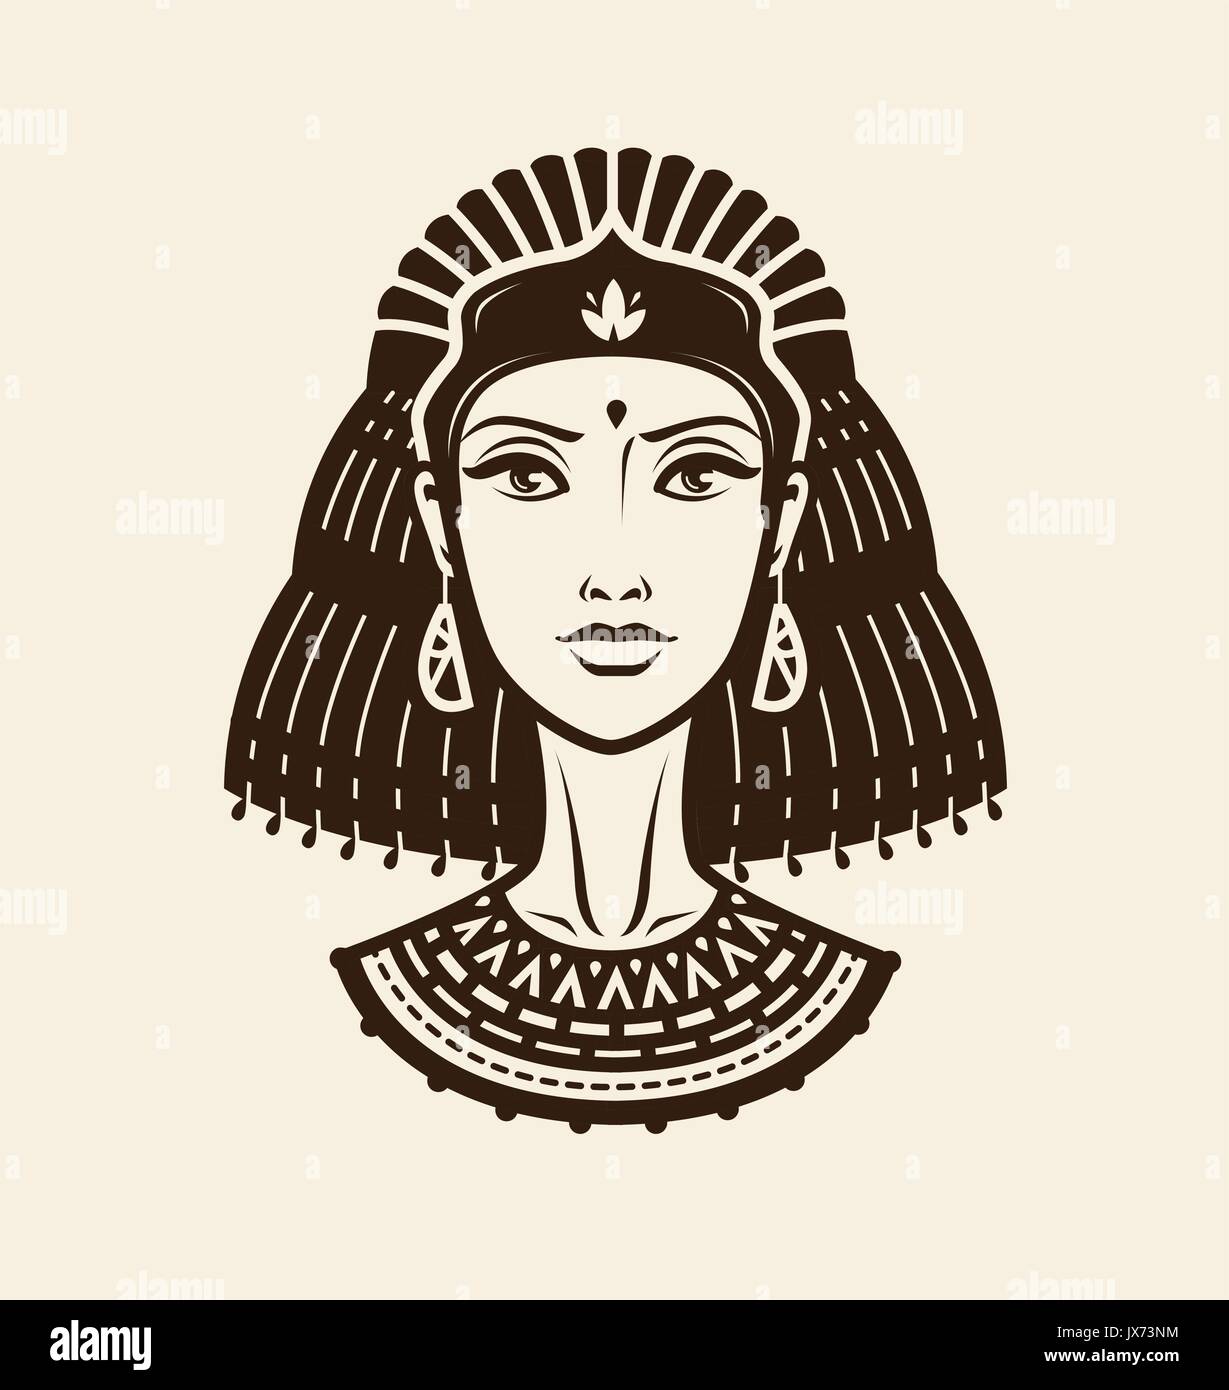 Porträt der schönen jungen Frau, Mädchen in ethnischen Outfit. Prinzessin, weibliche Krieger Logo oder Label. Vintage Vector Illustration Stock Vektor